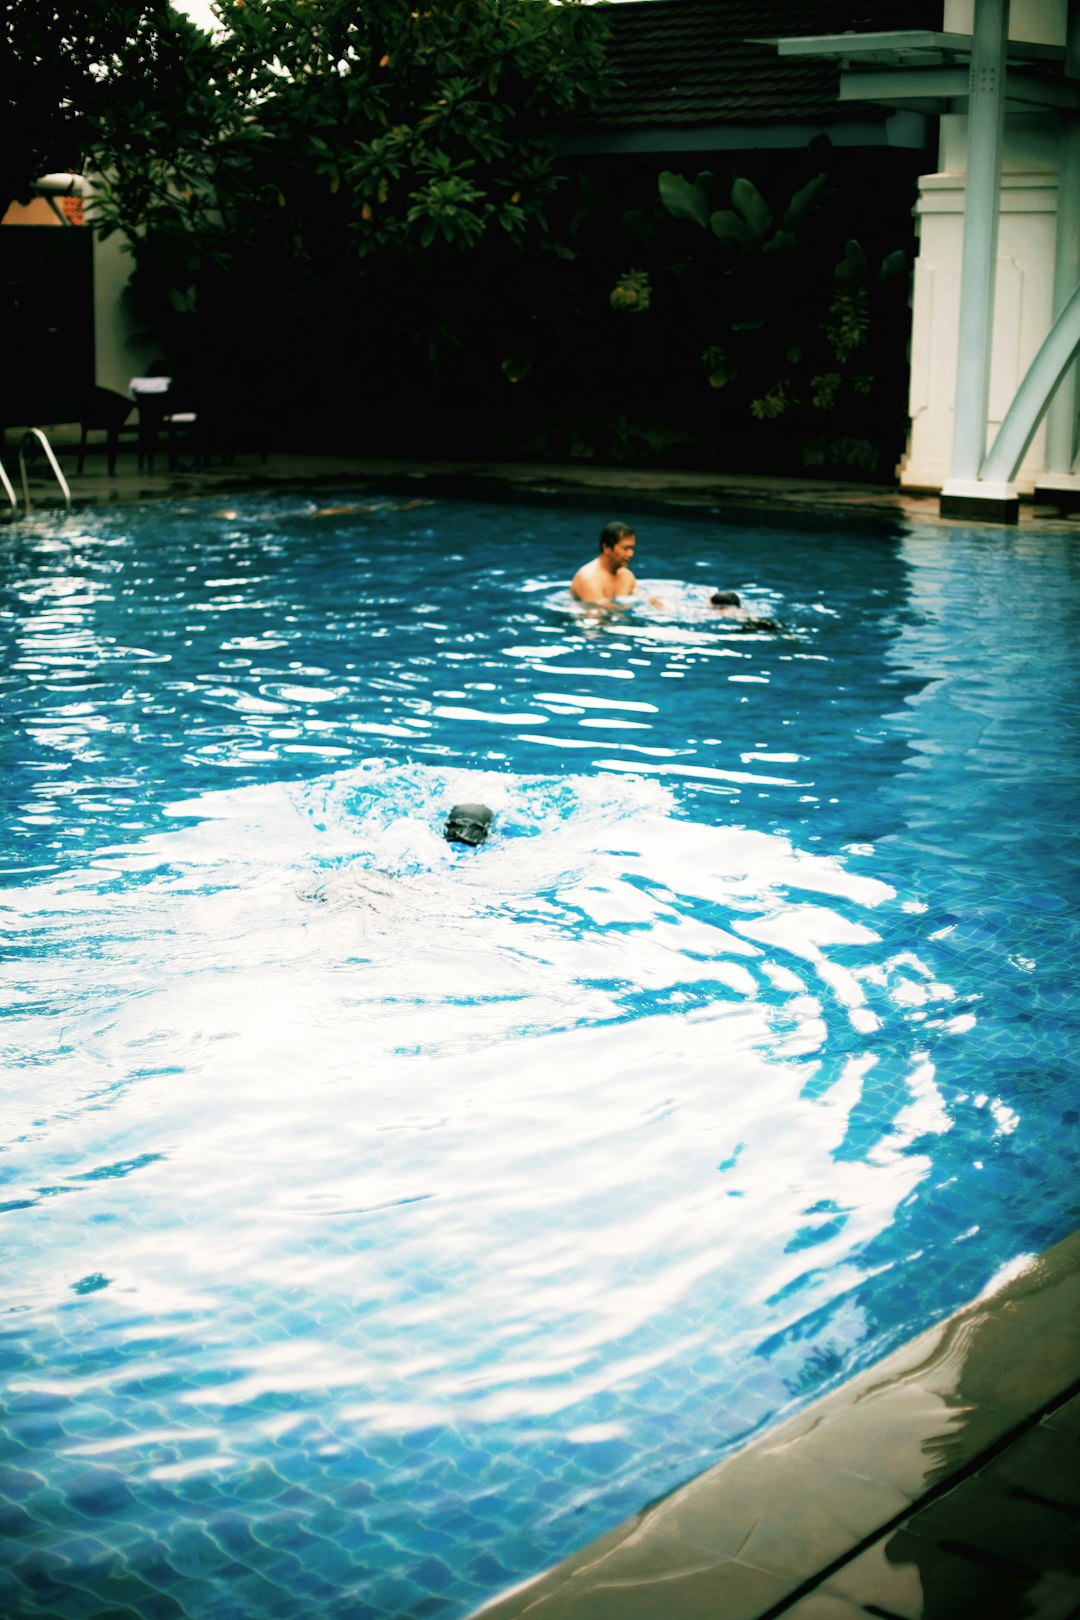 Swimming pool photo spot Yogyakarta Indonesia